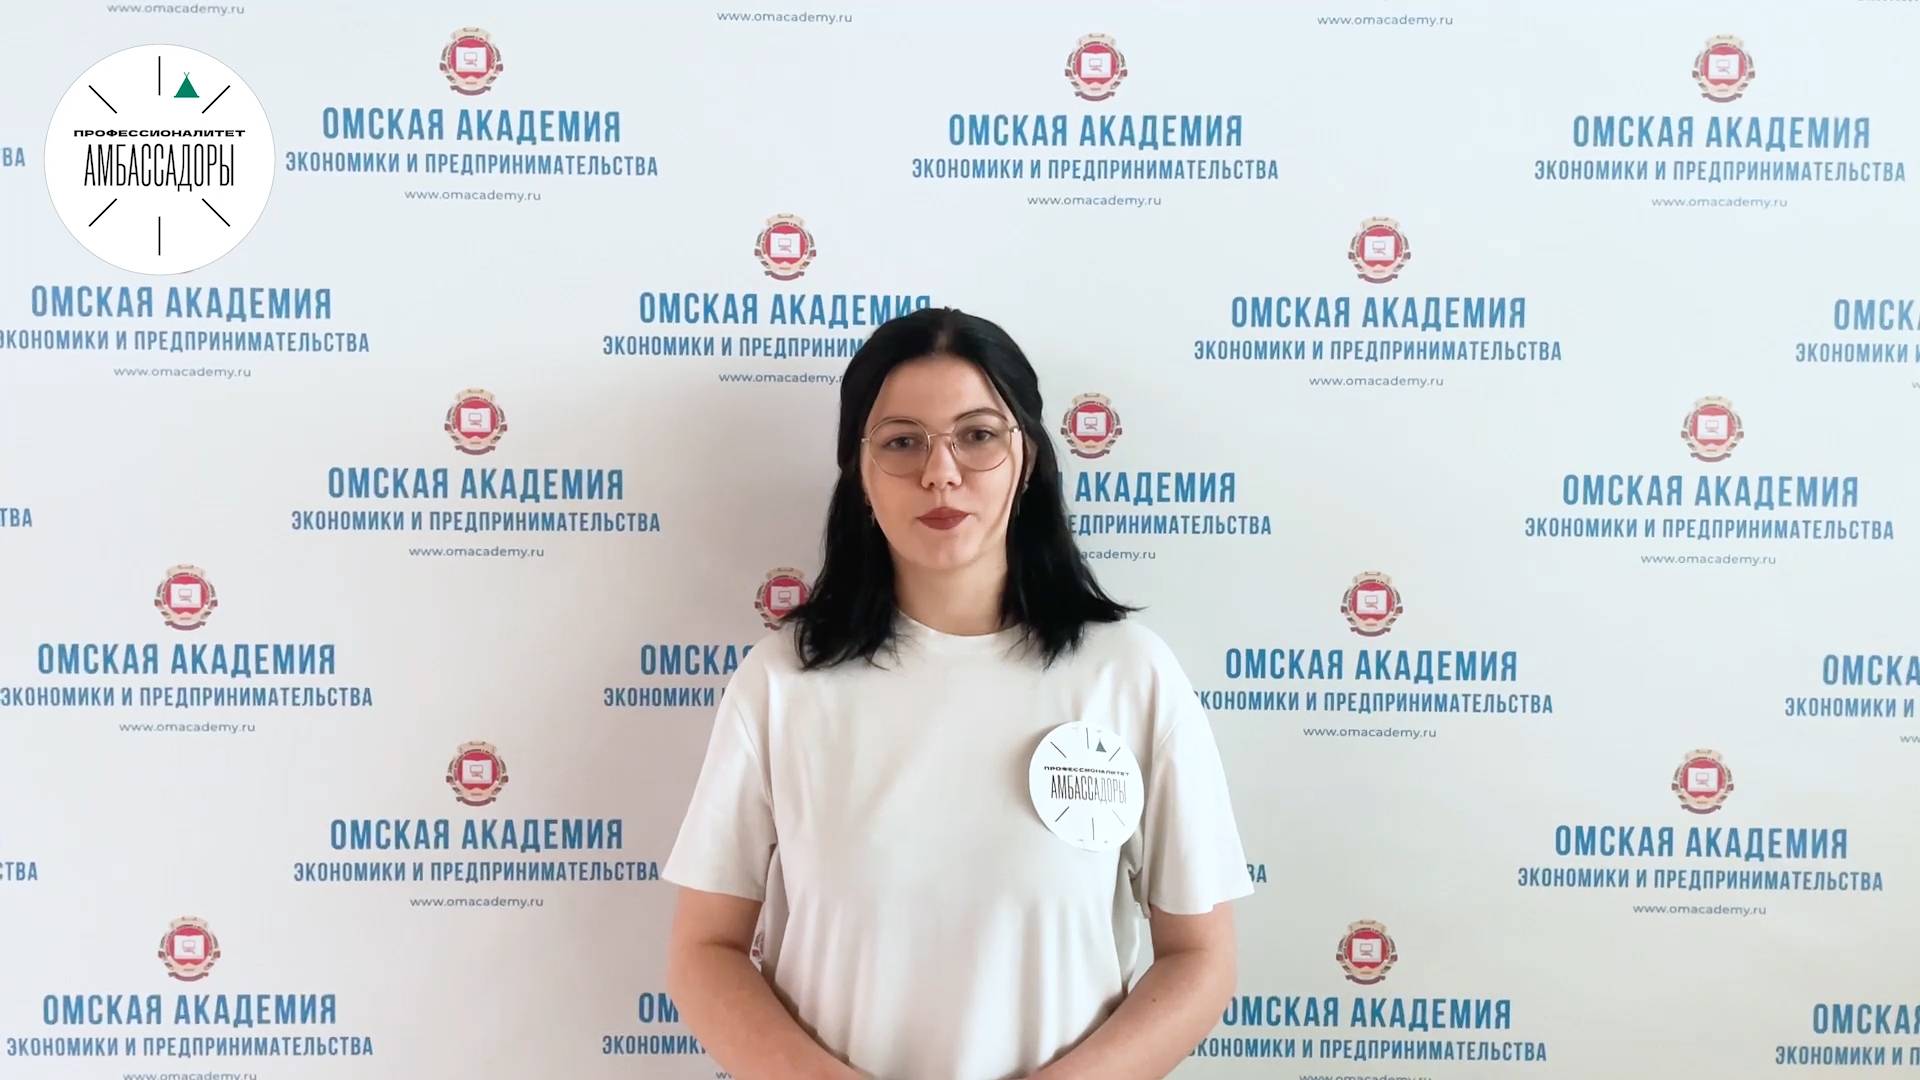 Видеоролик амбассадоров Профессионалитета о приемной кампании
Амбассадор ОмАЭиП - Варвара Сергеевна